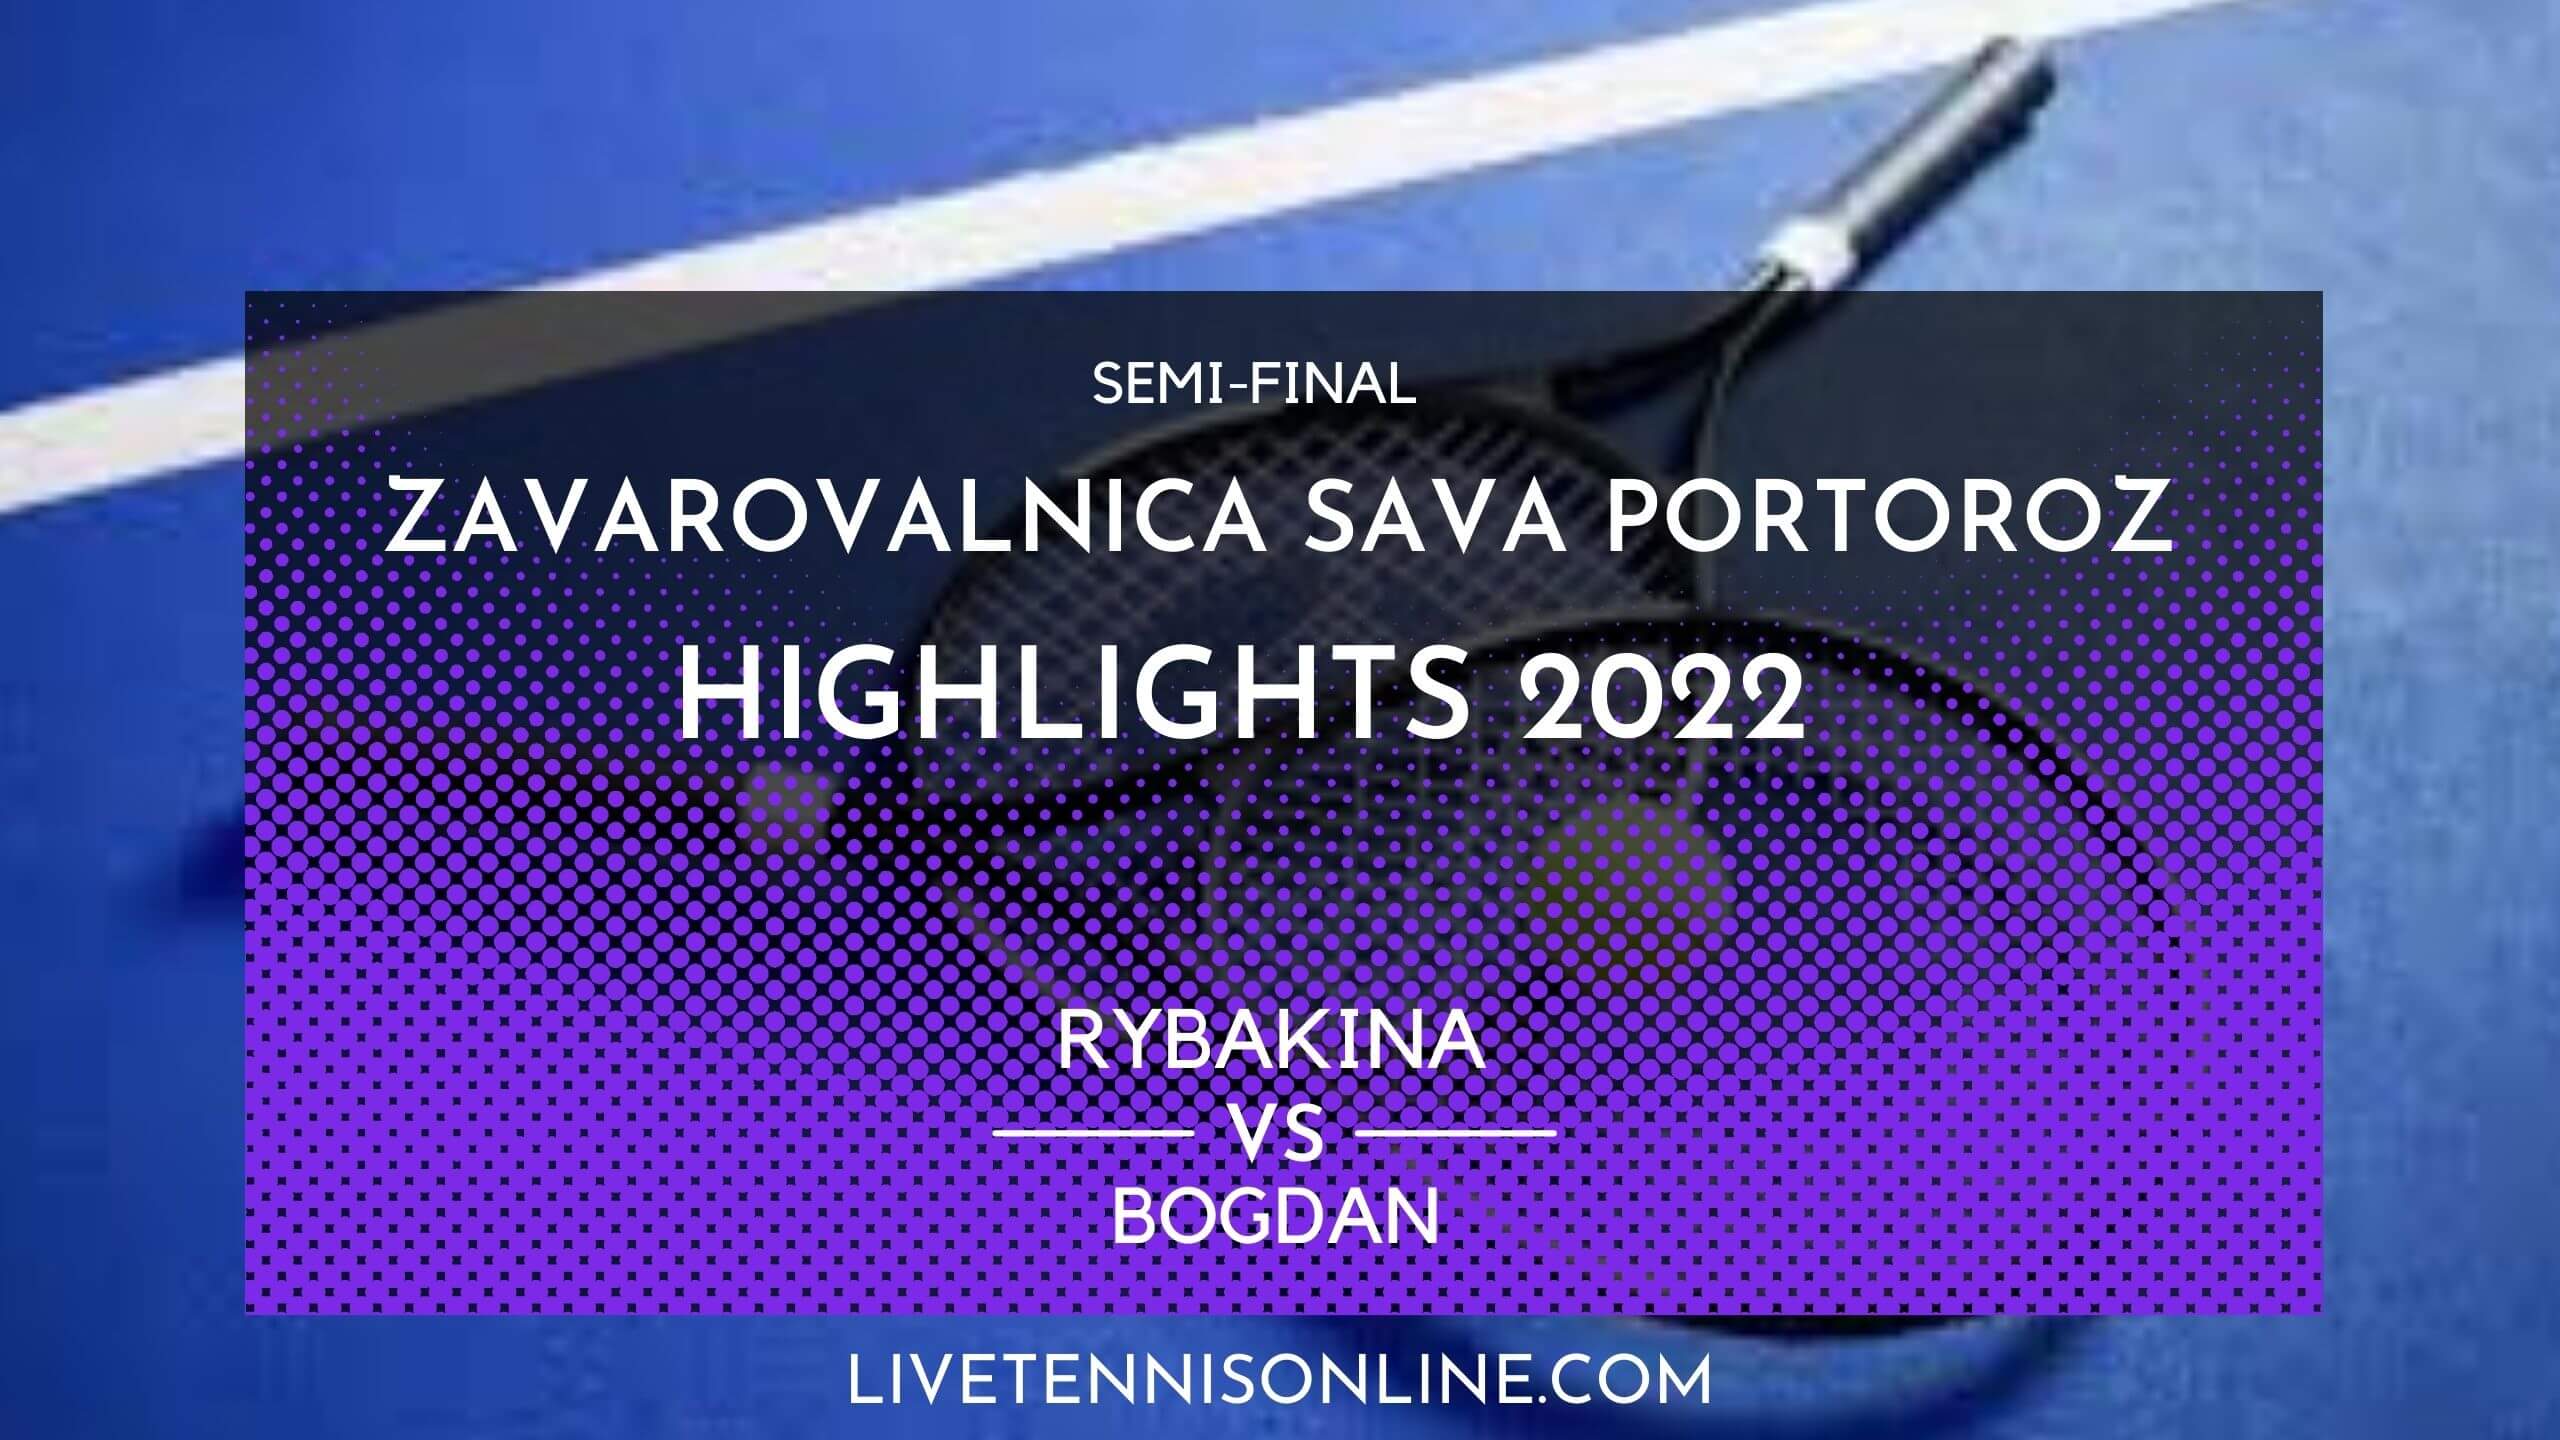 Rybakina Vs Bogdan SF Highlights 2022 Slovenia Open